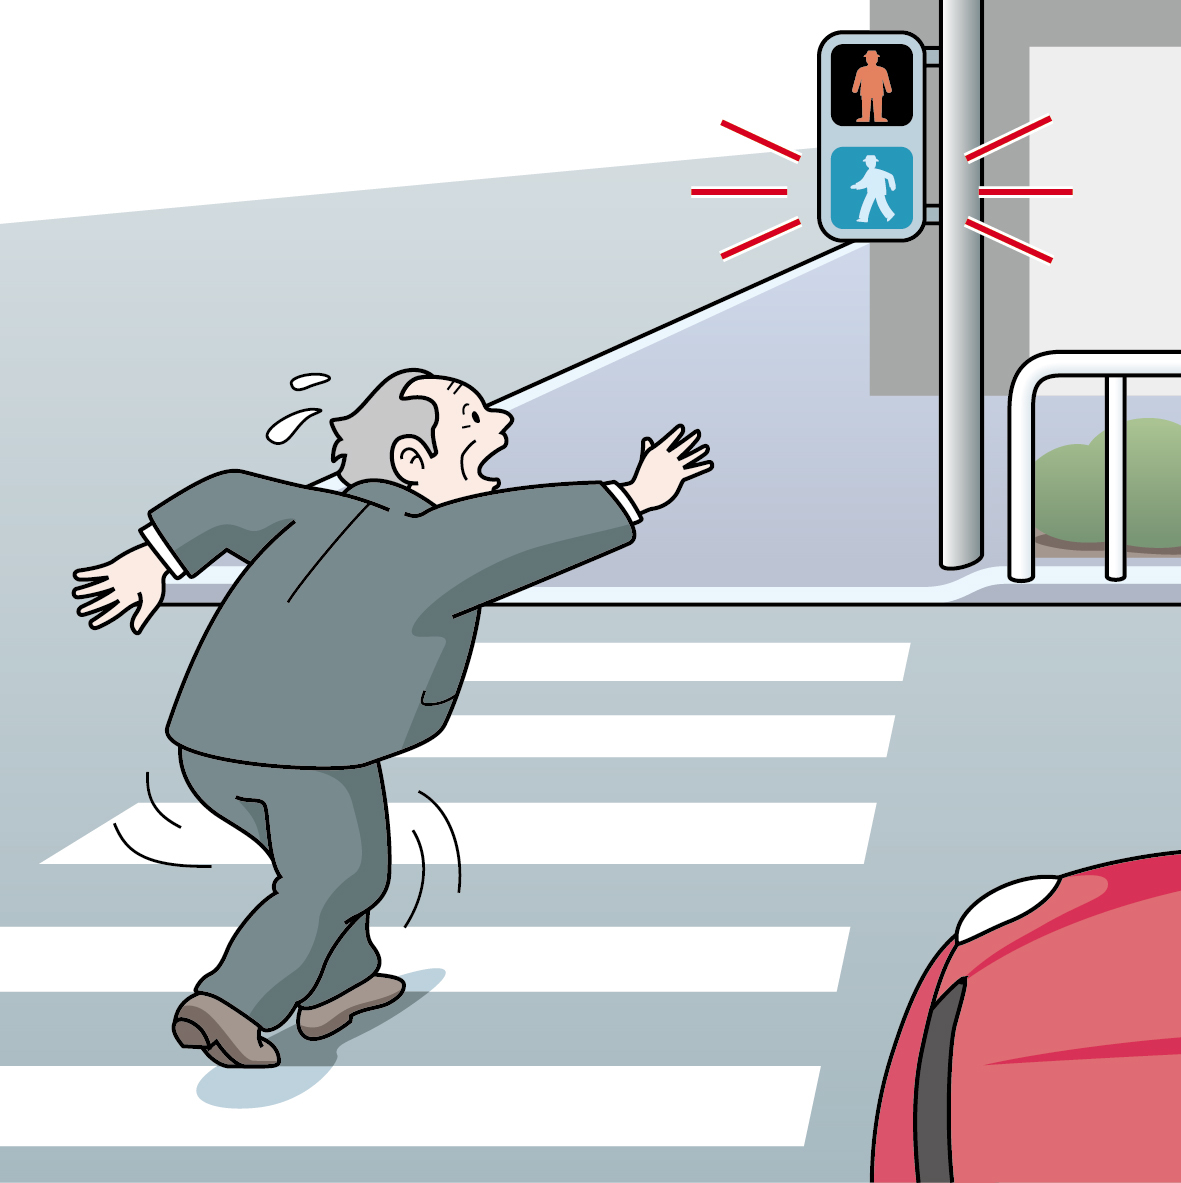 横断歩道を一度の青信号で渡り切れるかが一つの判断材料に